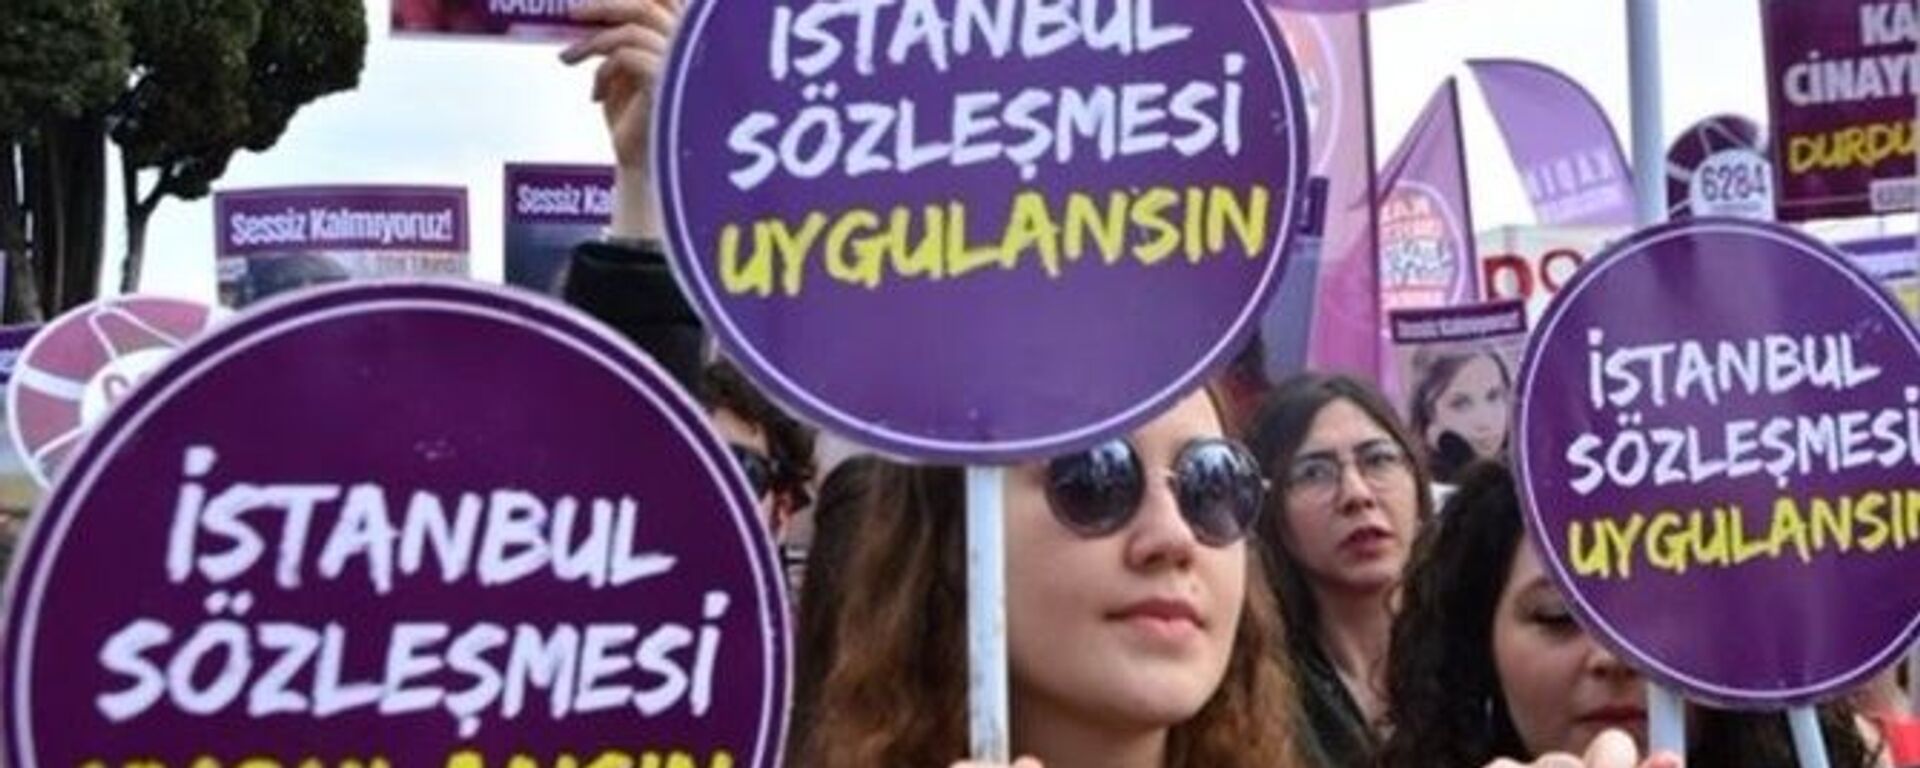 Kadına yönelik şiddet protestosu - İstanbul Sözleşmesi - Sputnik Türkiye, 1920, 07.03.2021